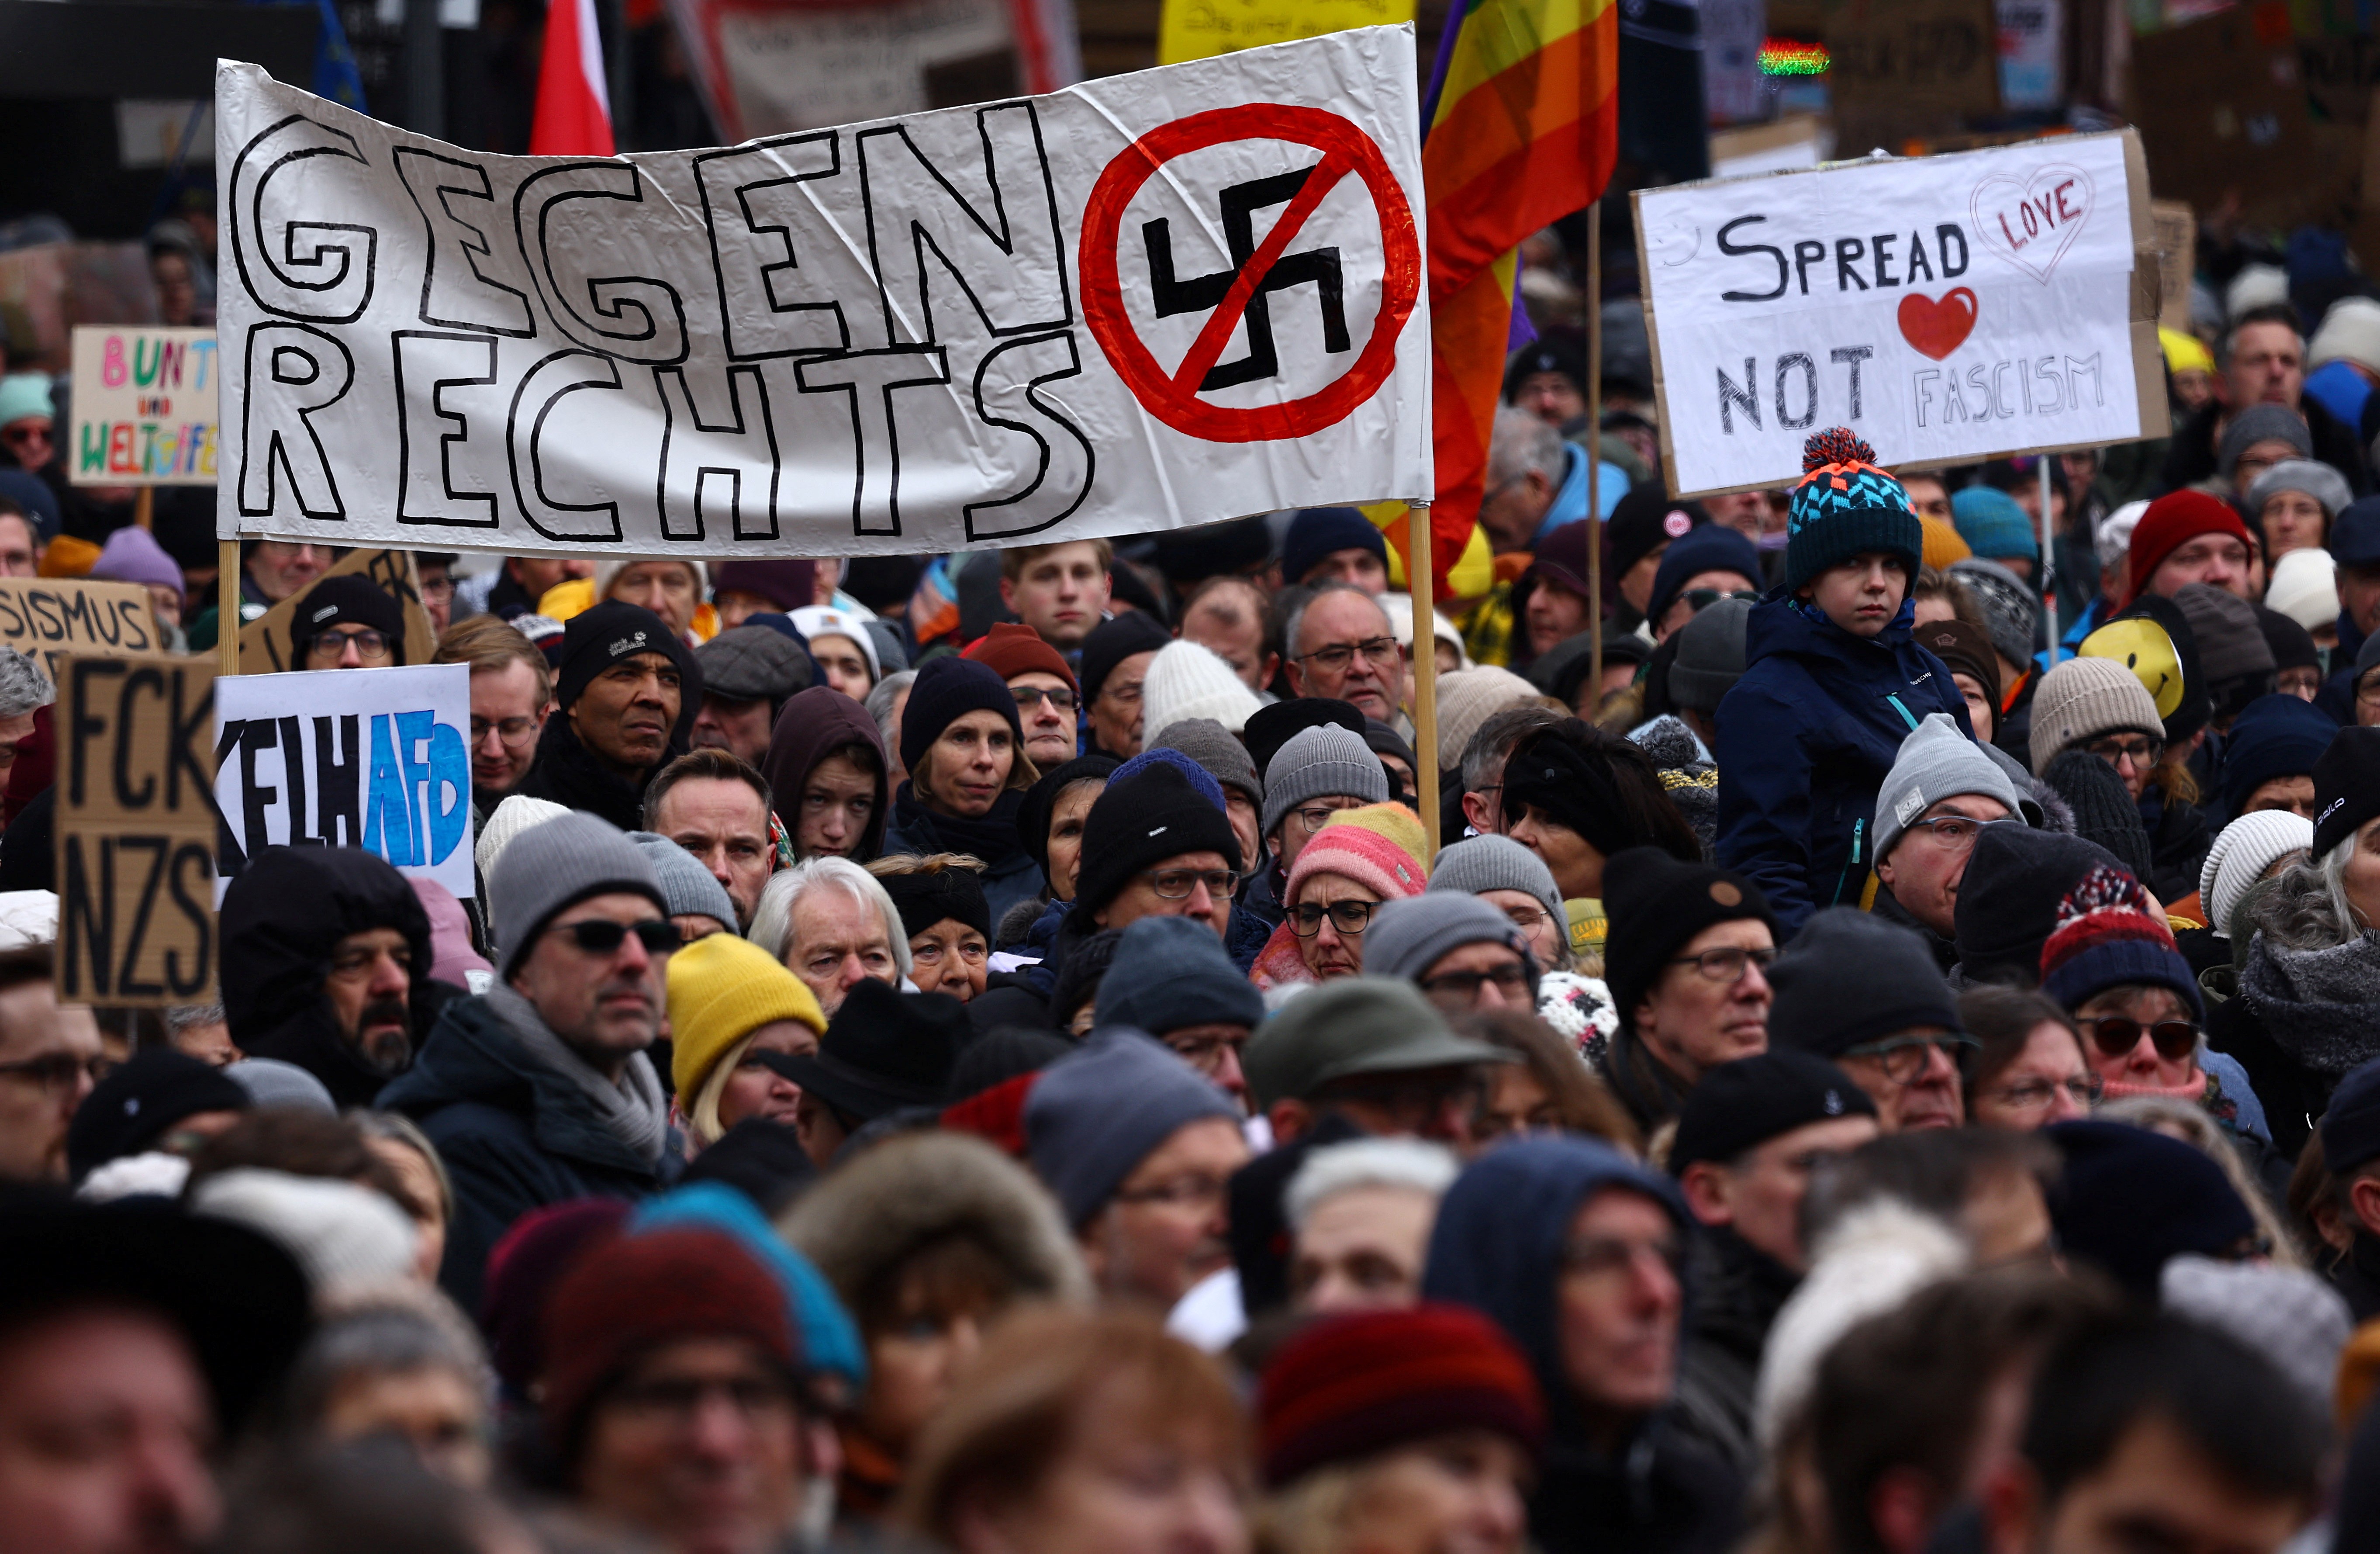 ‘Remigração’ é eleita ‘despalavra’ do ano na Alemanha